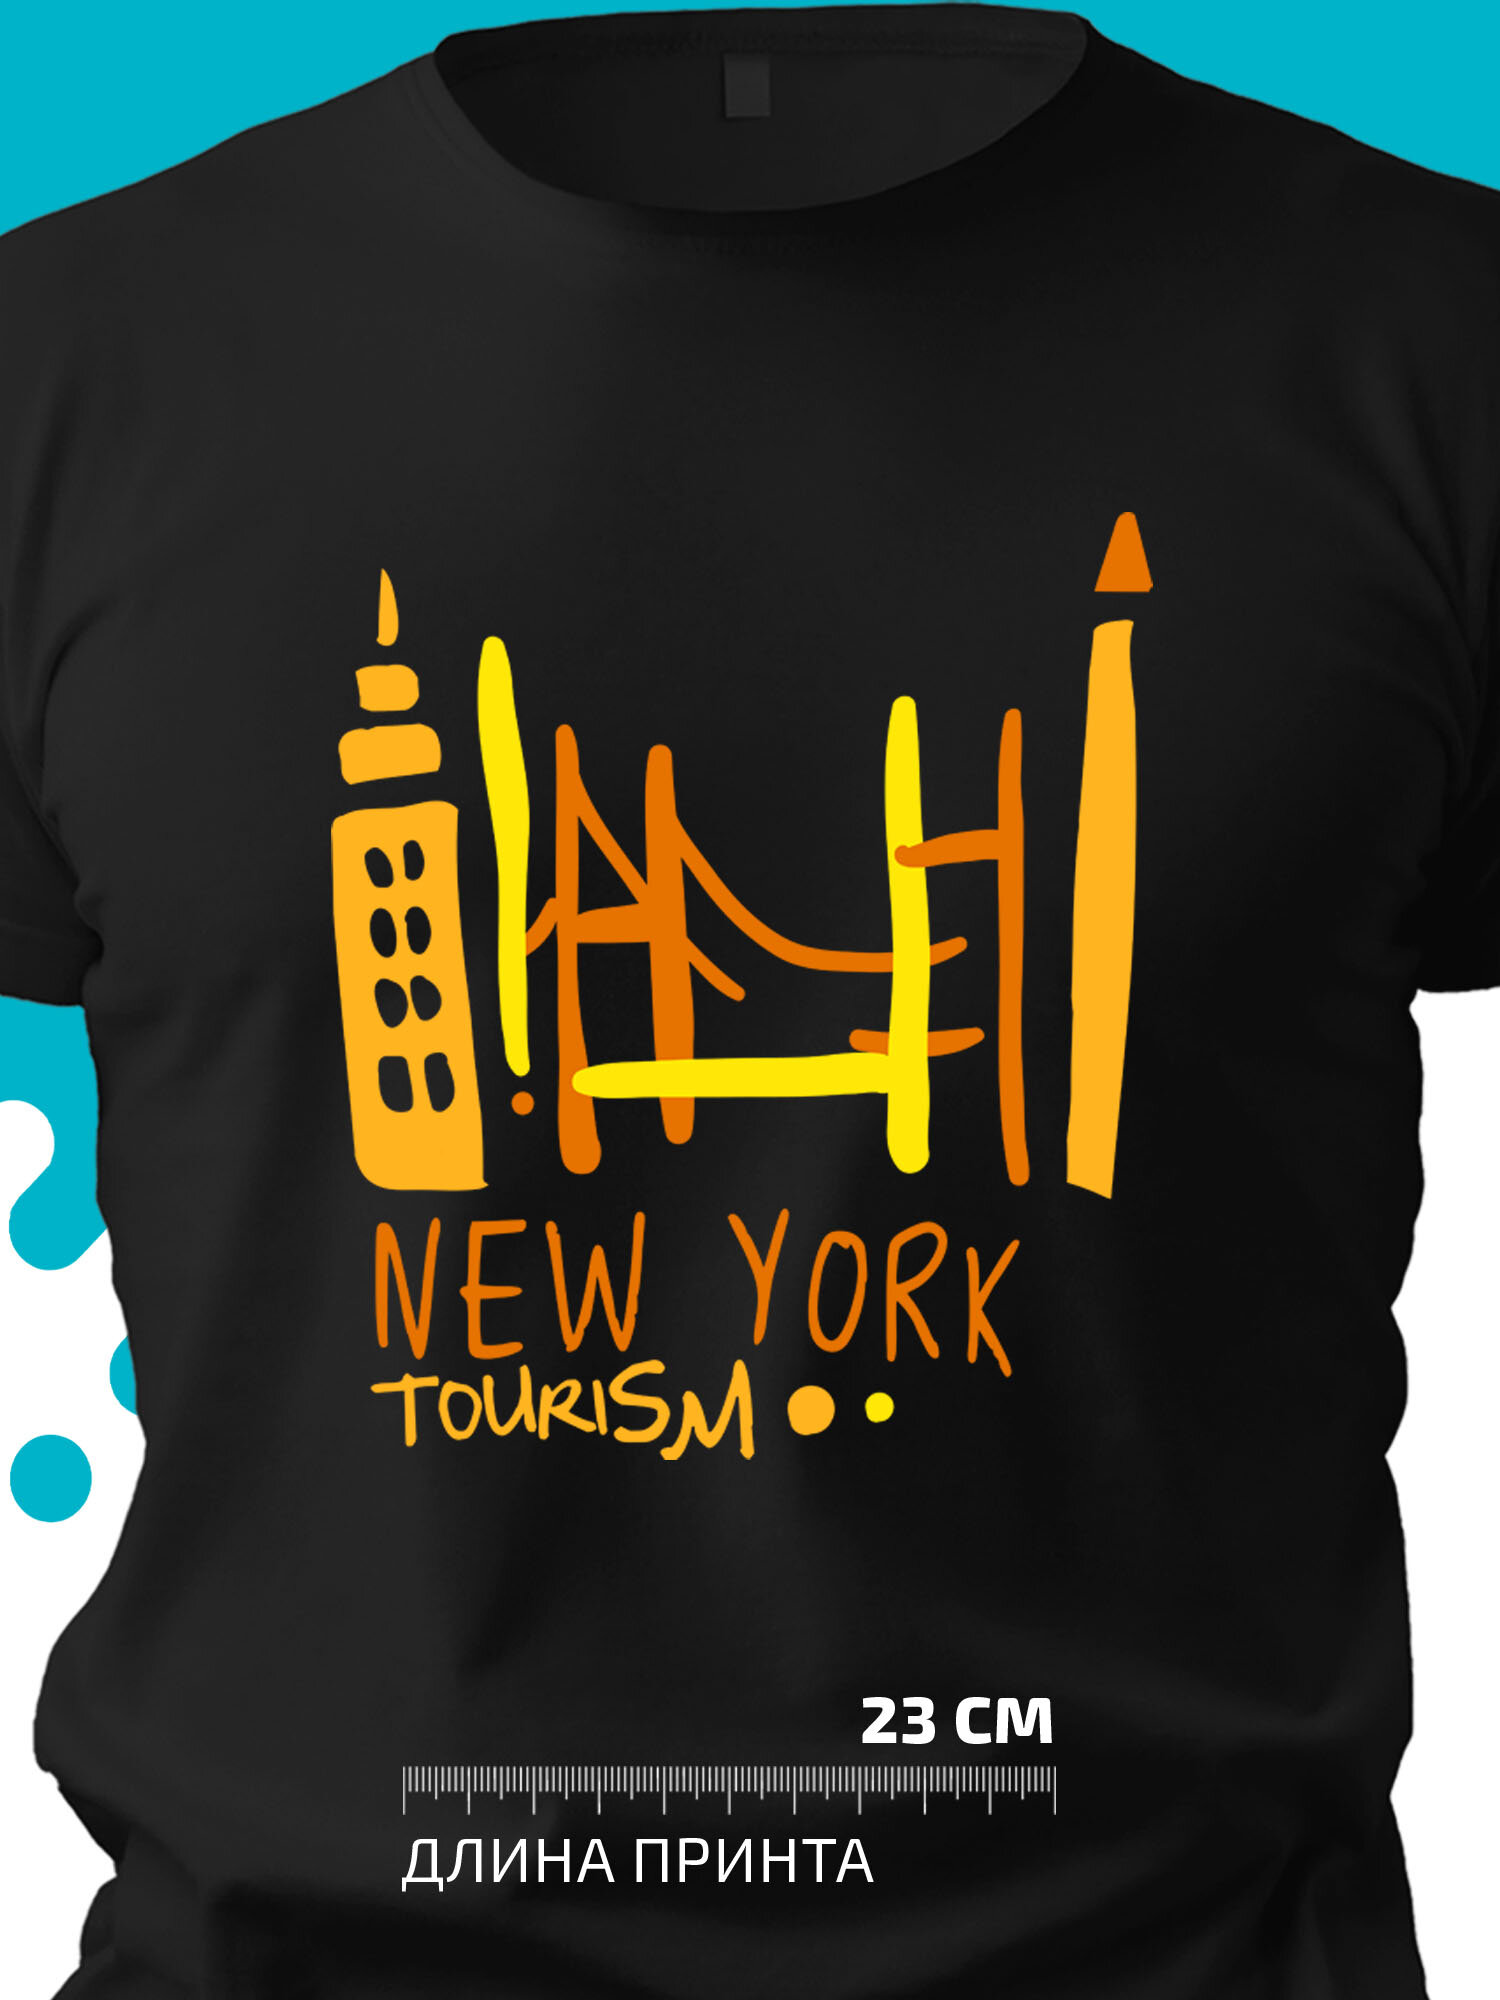 Футболка New York tourism Нью-Йоркский туризм с очертанием достопримечательностей